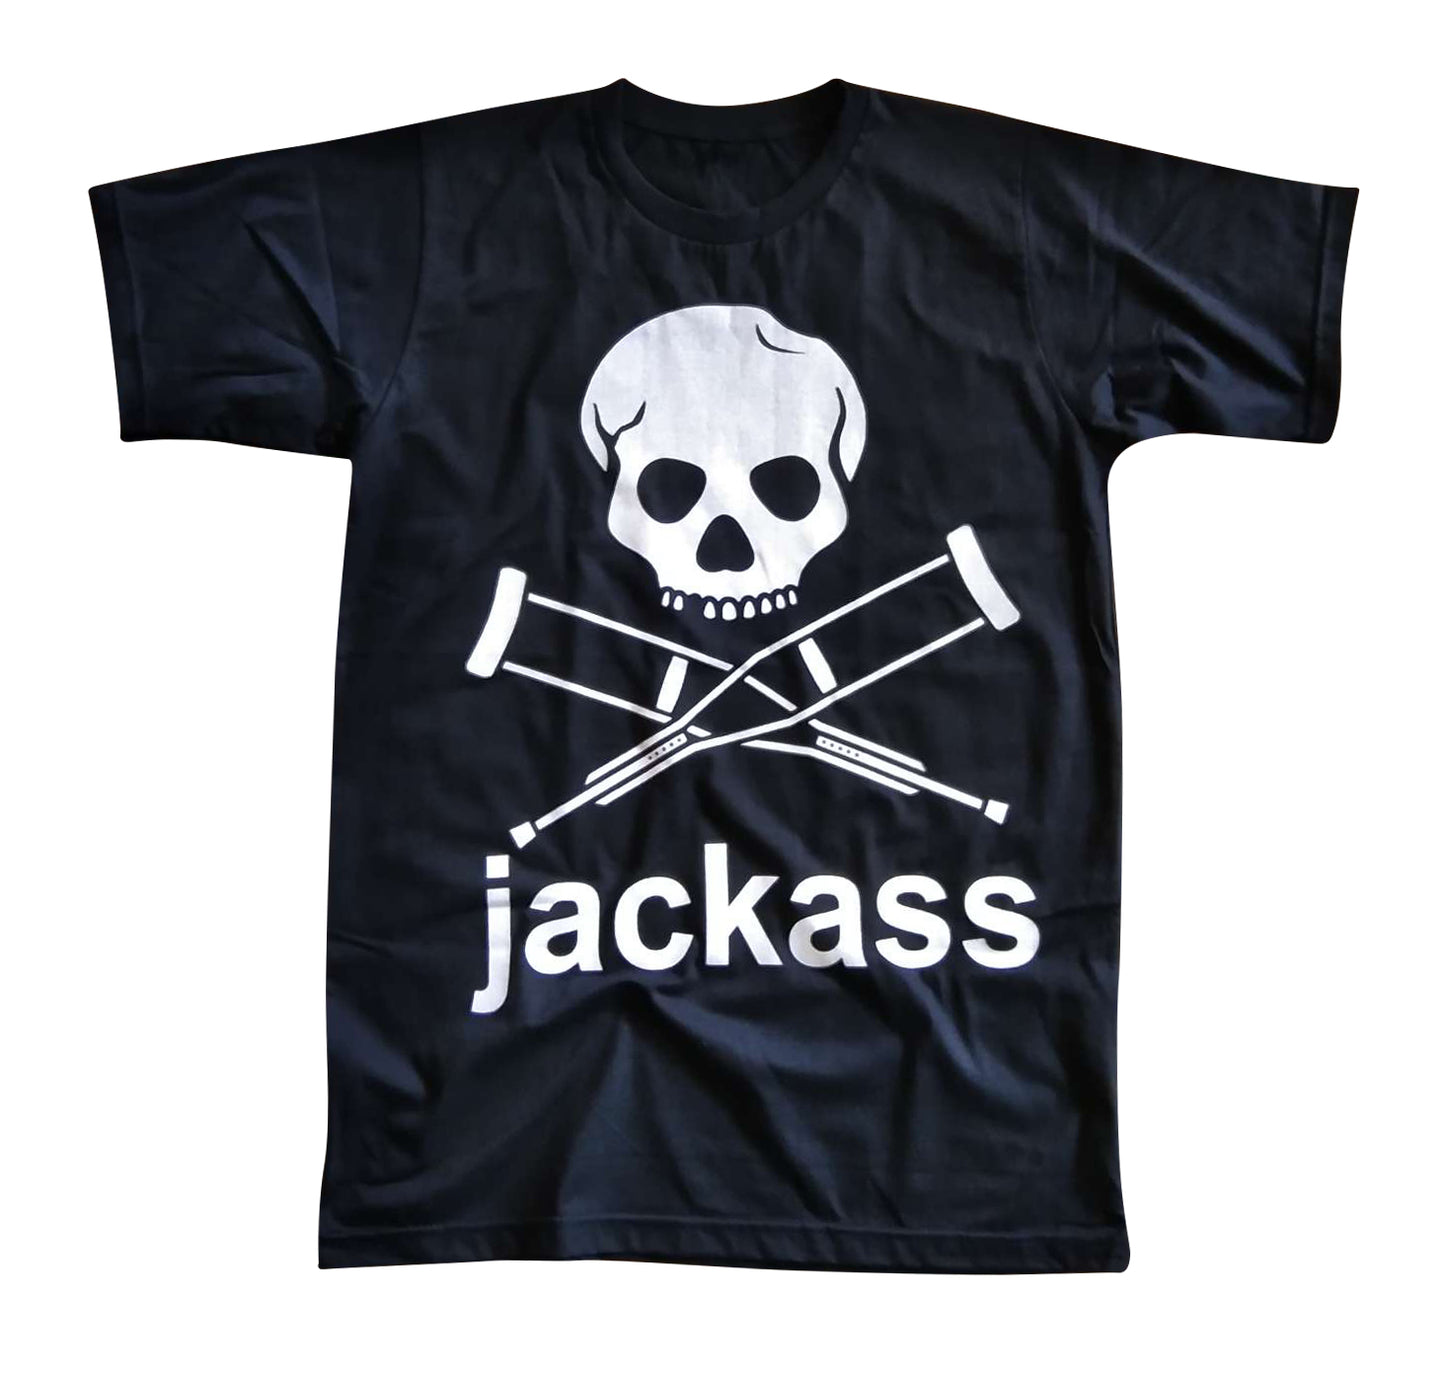 Jackass Short Sleeve T-Shirt